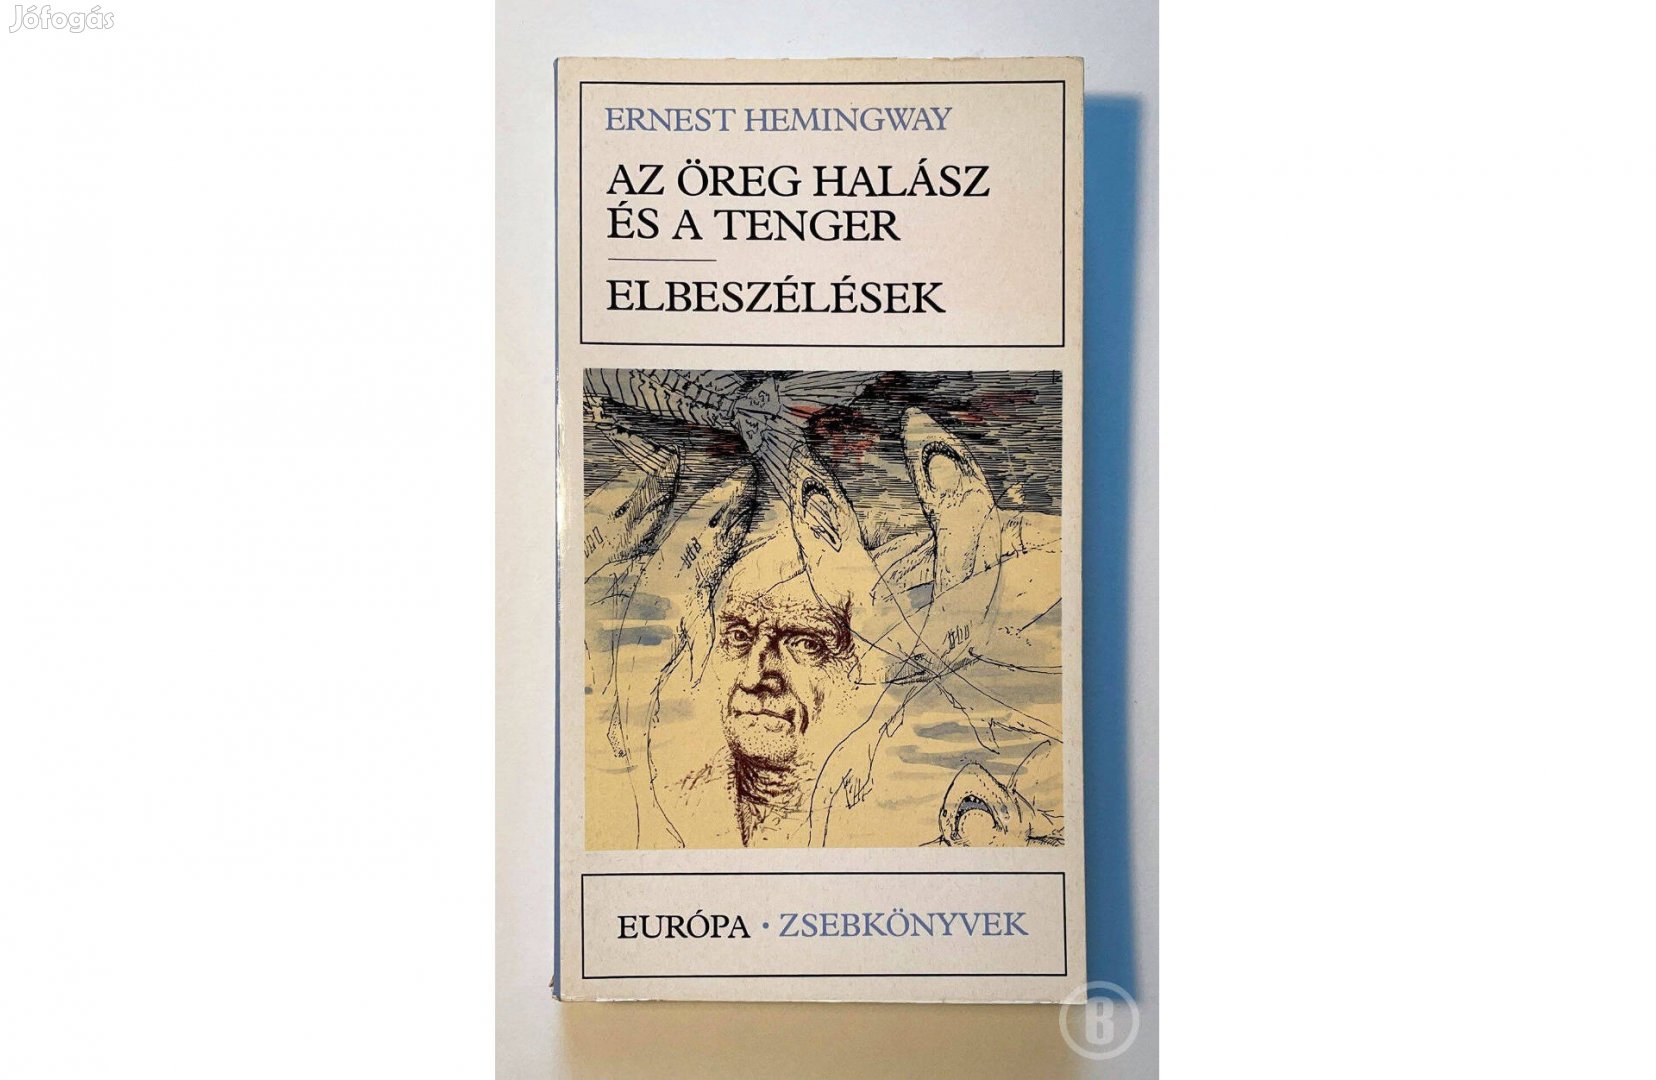 Ernest Hemingway: Az öreg halász és a tenger, Elbeszélések